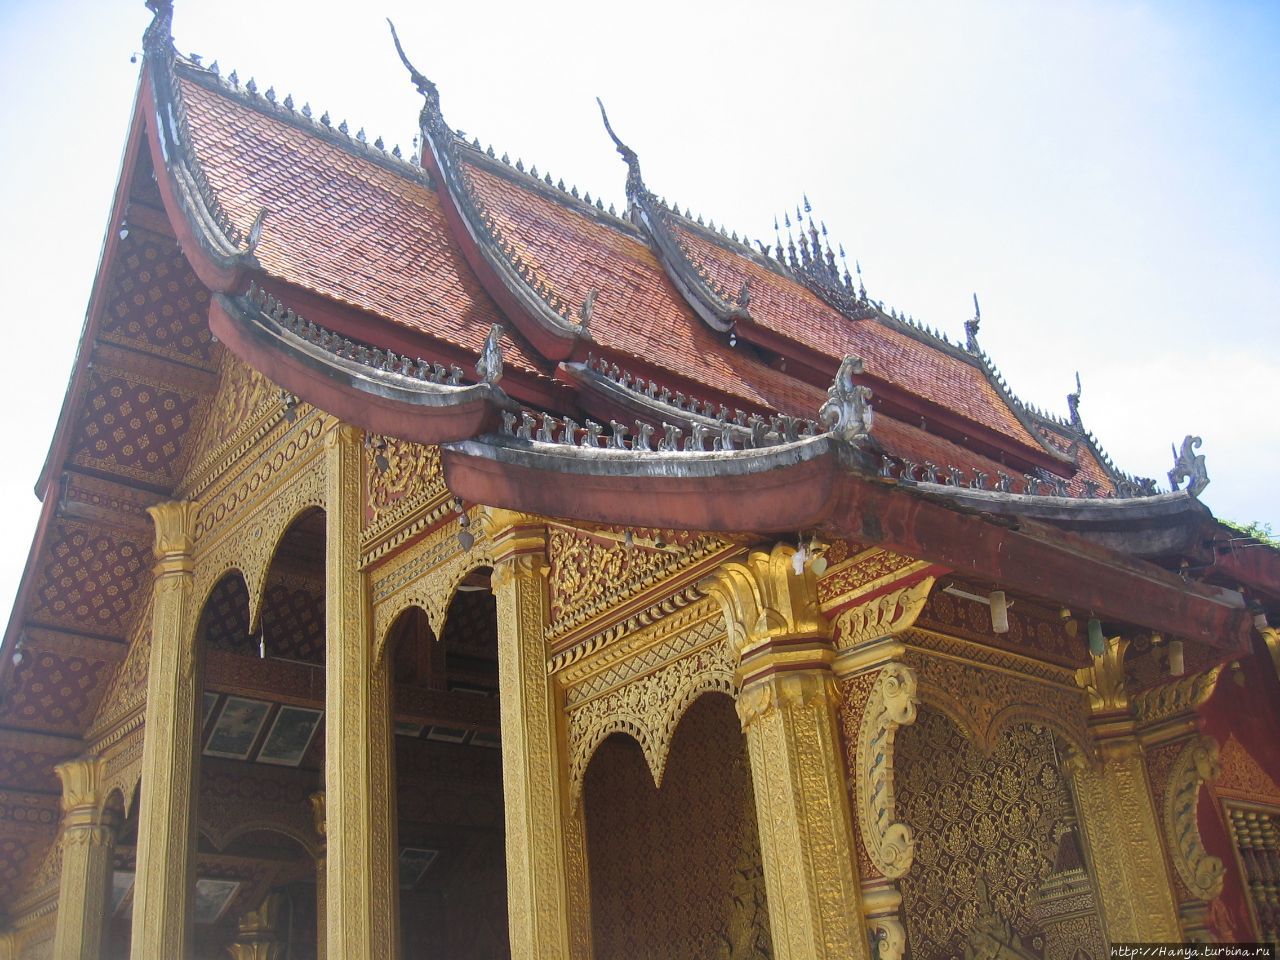 Храмовый комплекс Ват Сене Сук Харам. Здание Wat phra chao pet soc и золотая ступа Луанг-Прабанг, Лаос